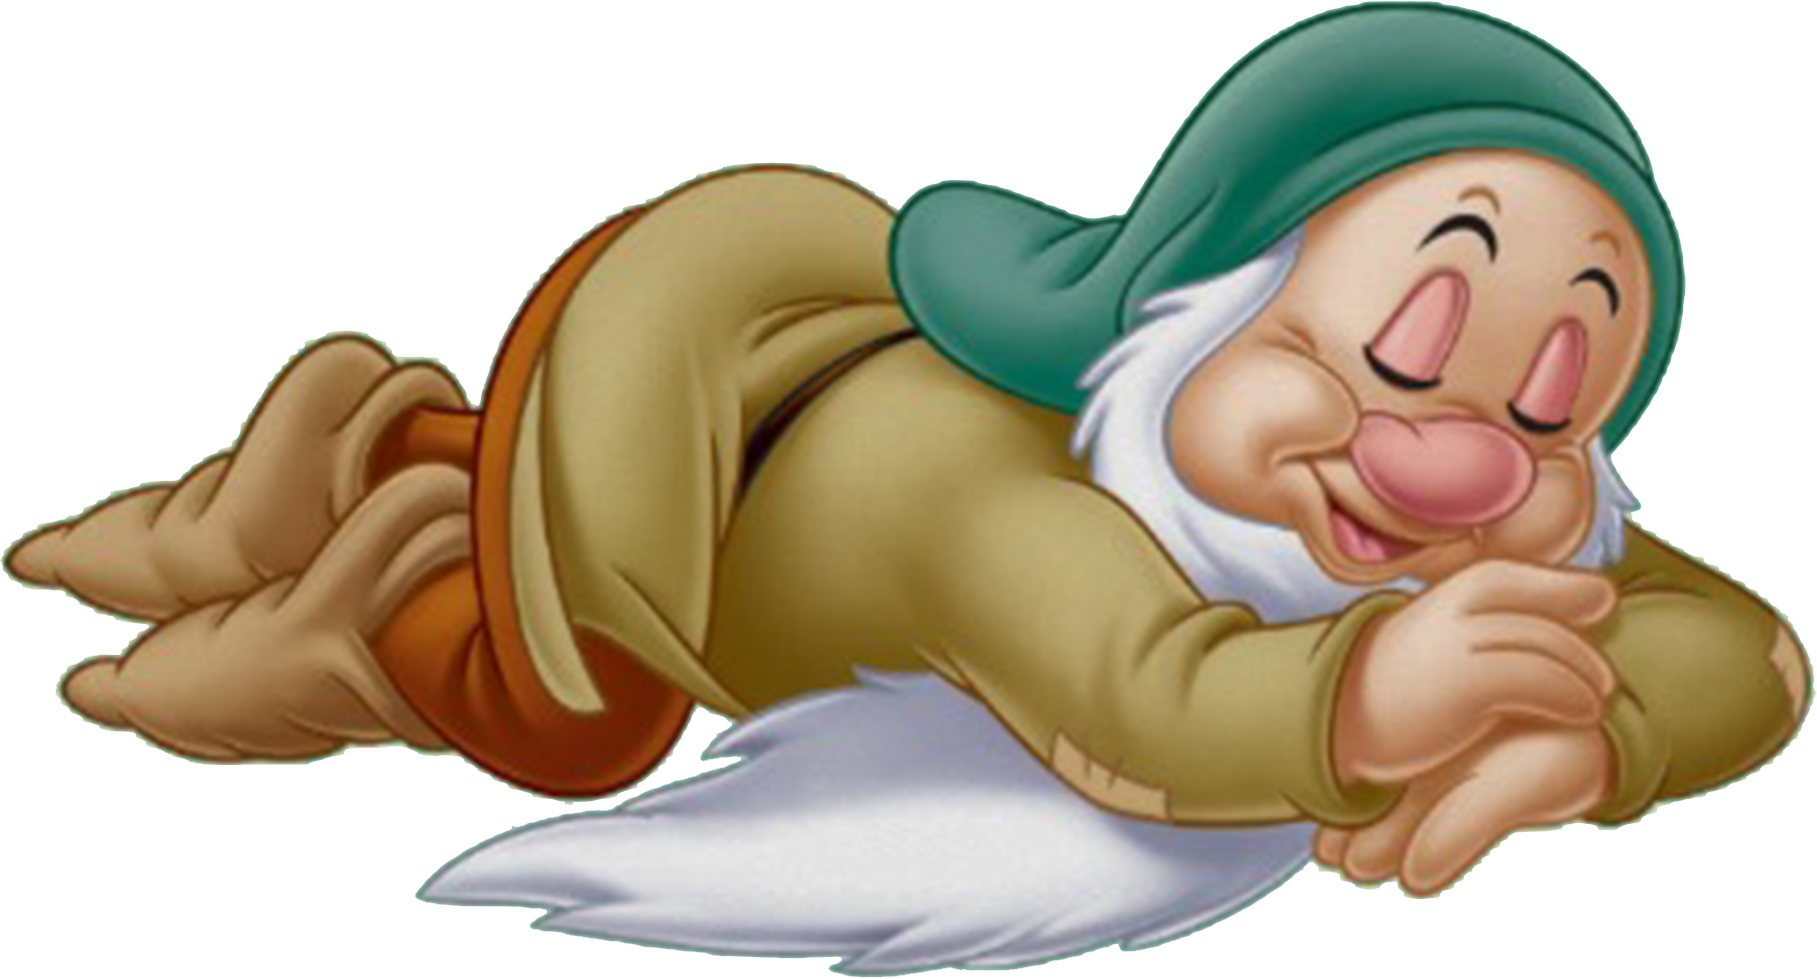 Sleepy, Walt Disney Animation Studios Wikia